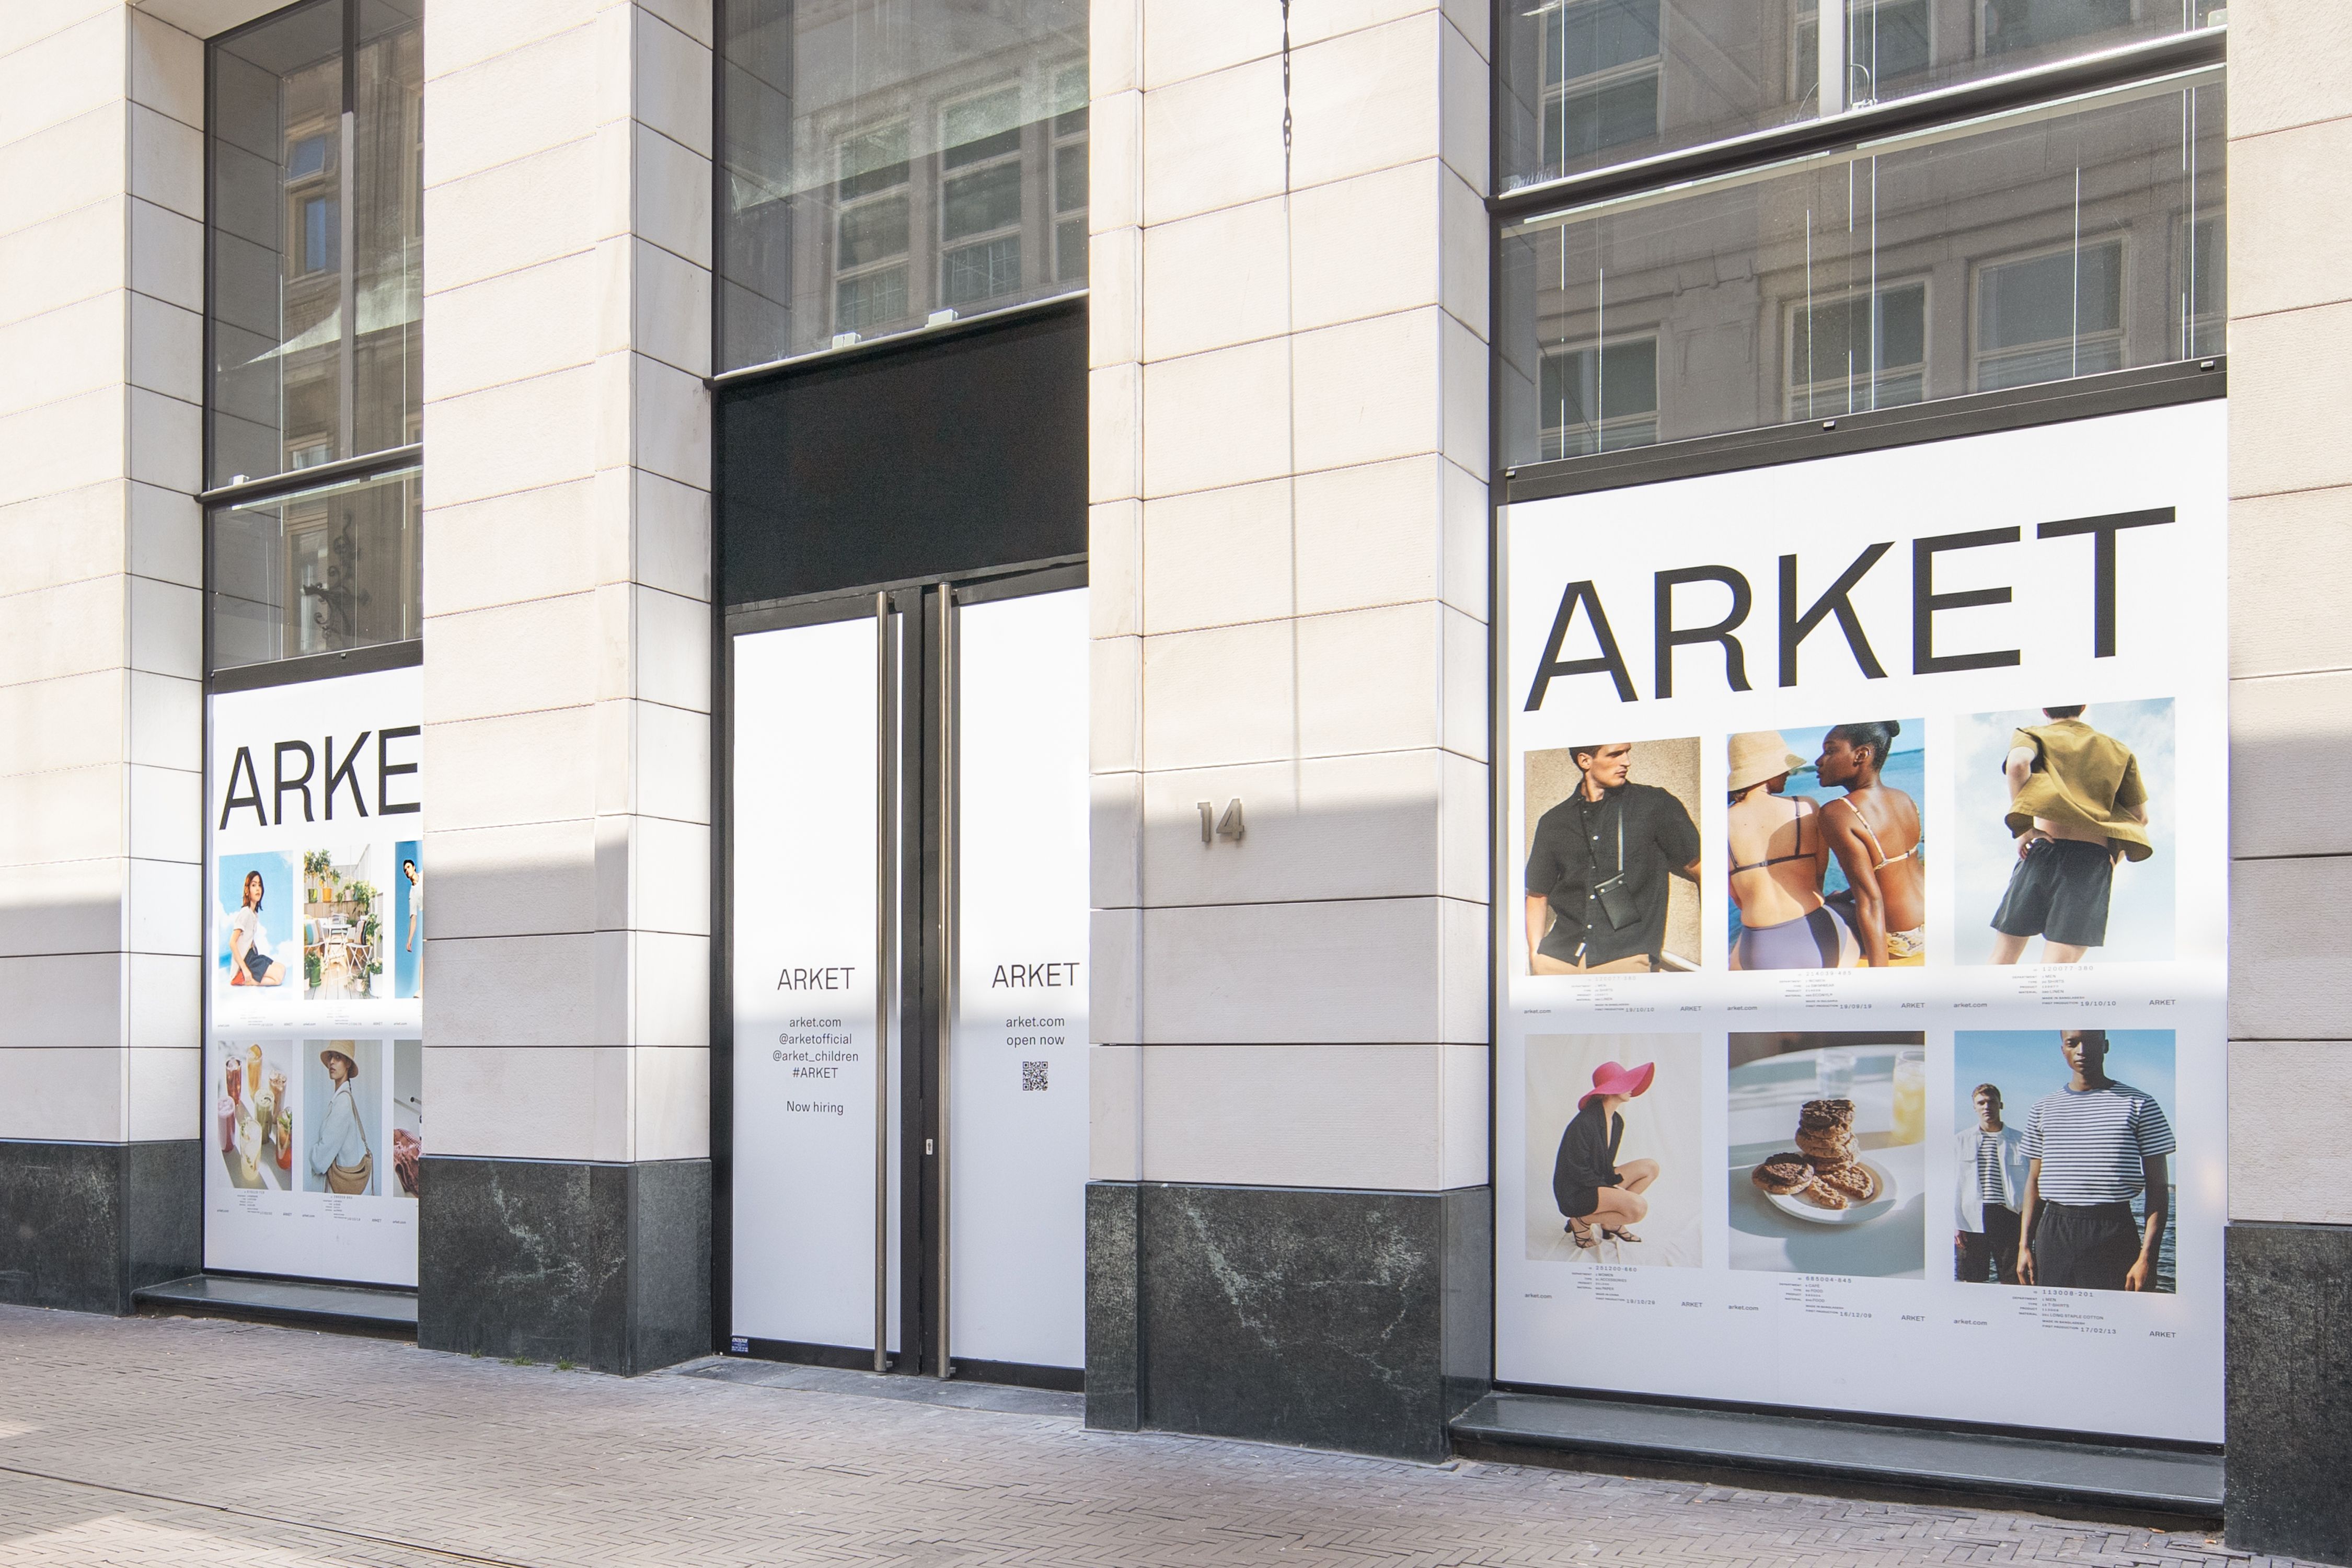 Arket vandaag haar winkel Nederland: in Den Haag